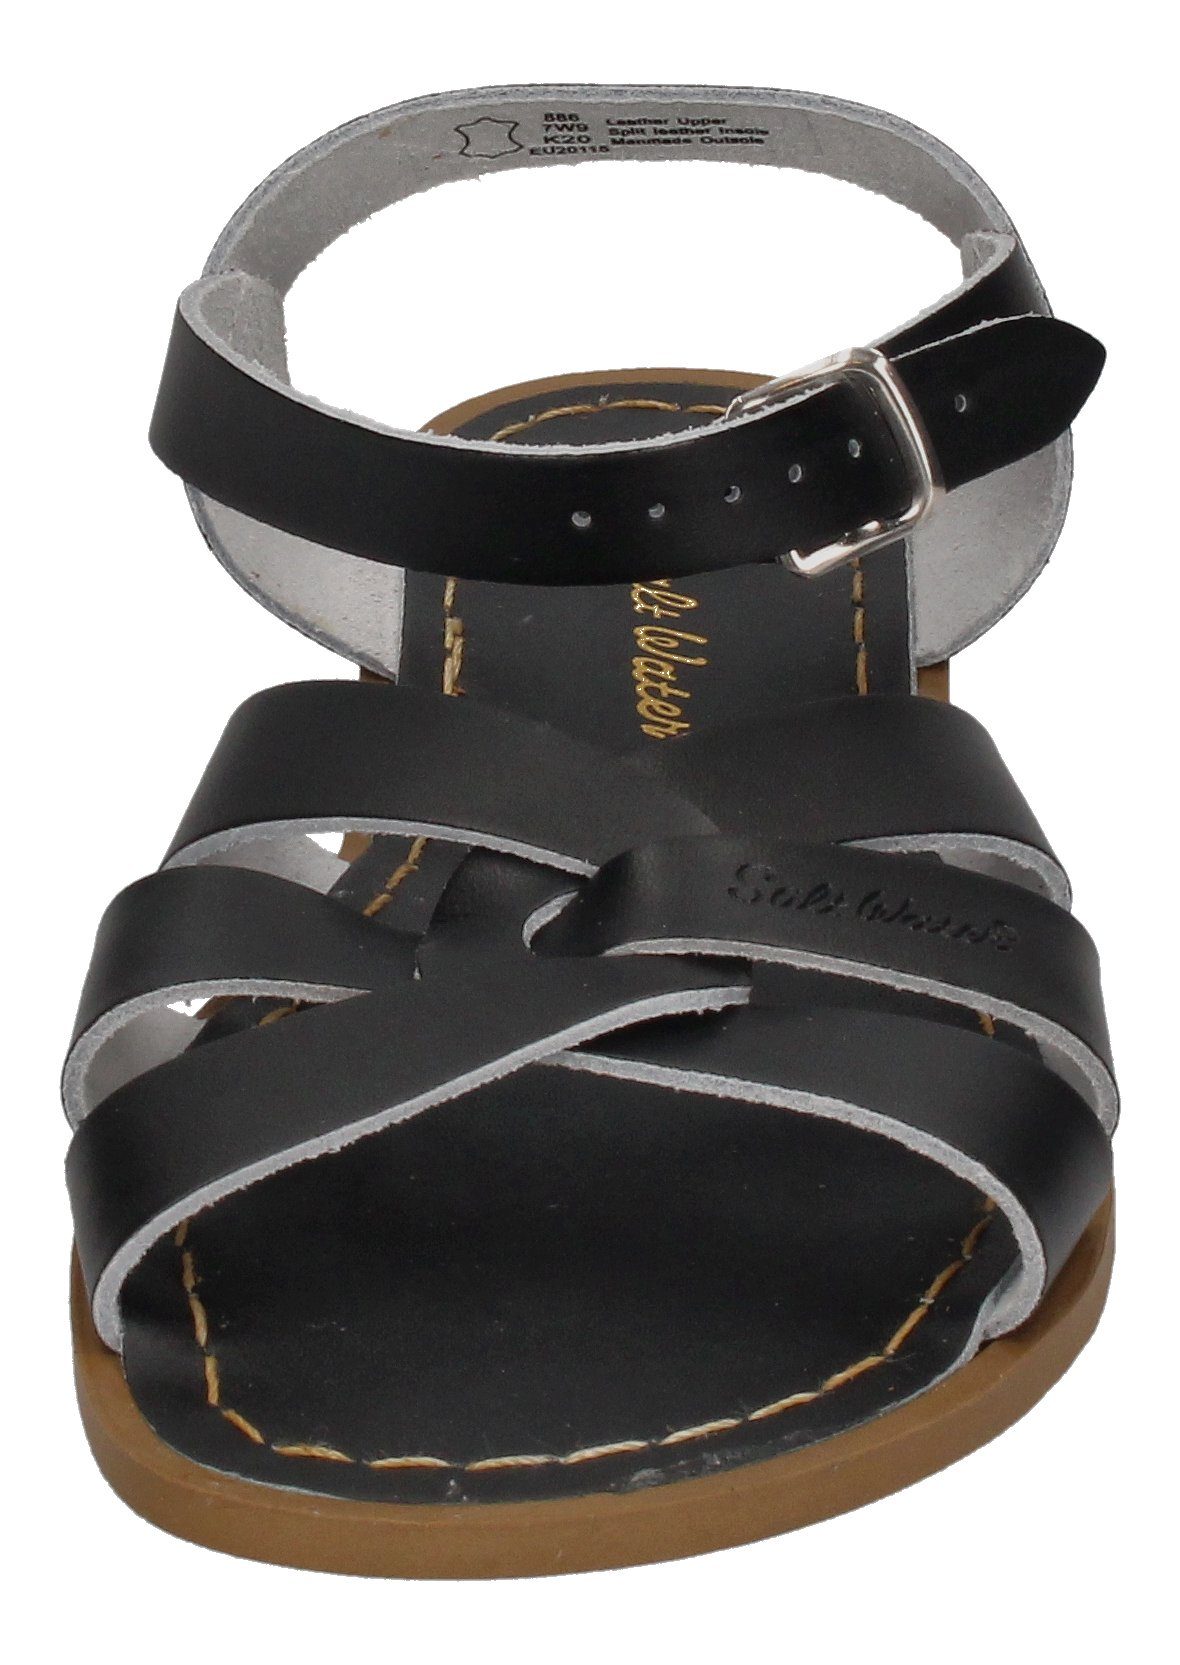 Schuhe Sandaletten Salt Water ORIGINAL 886 Riemchensandalette Black